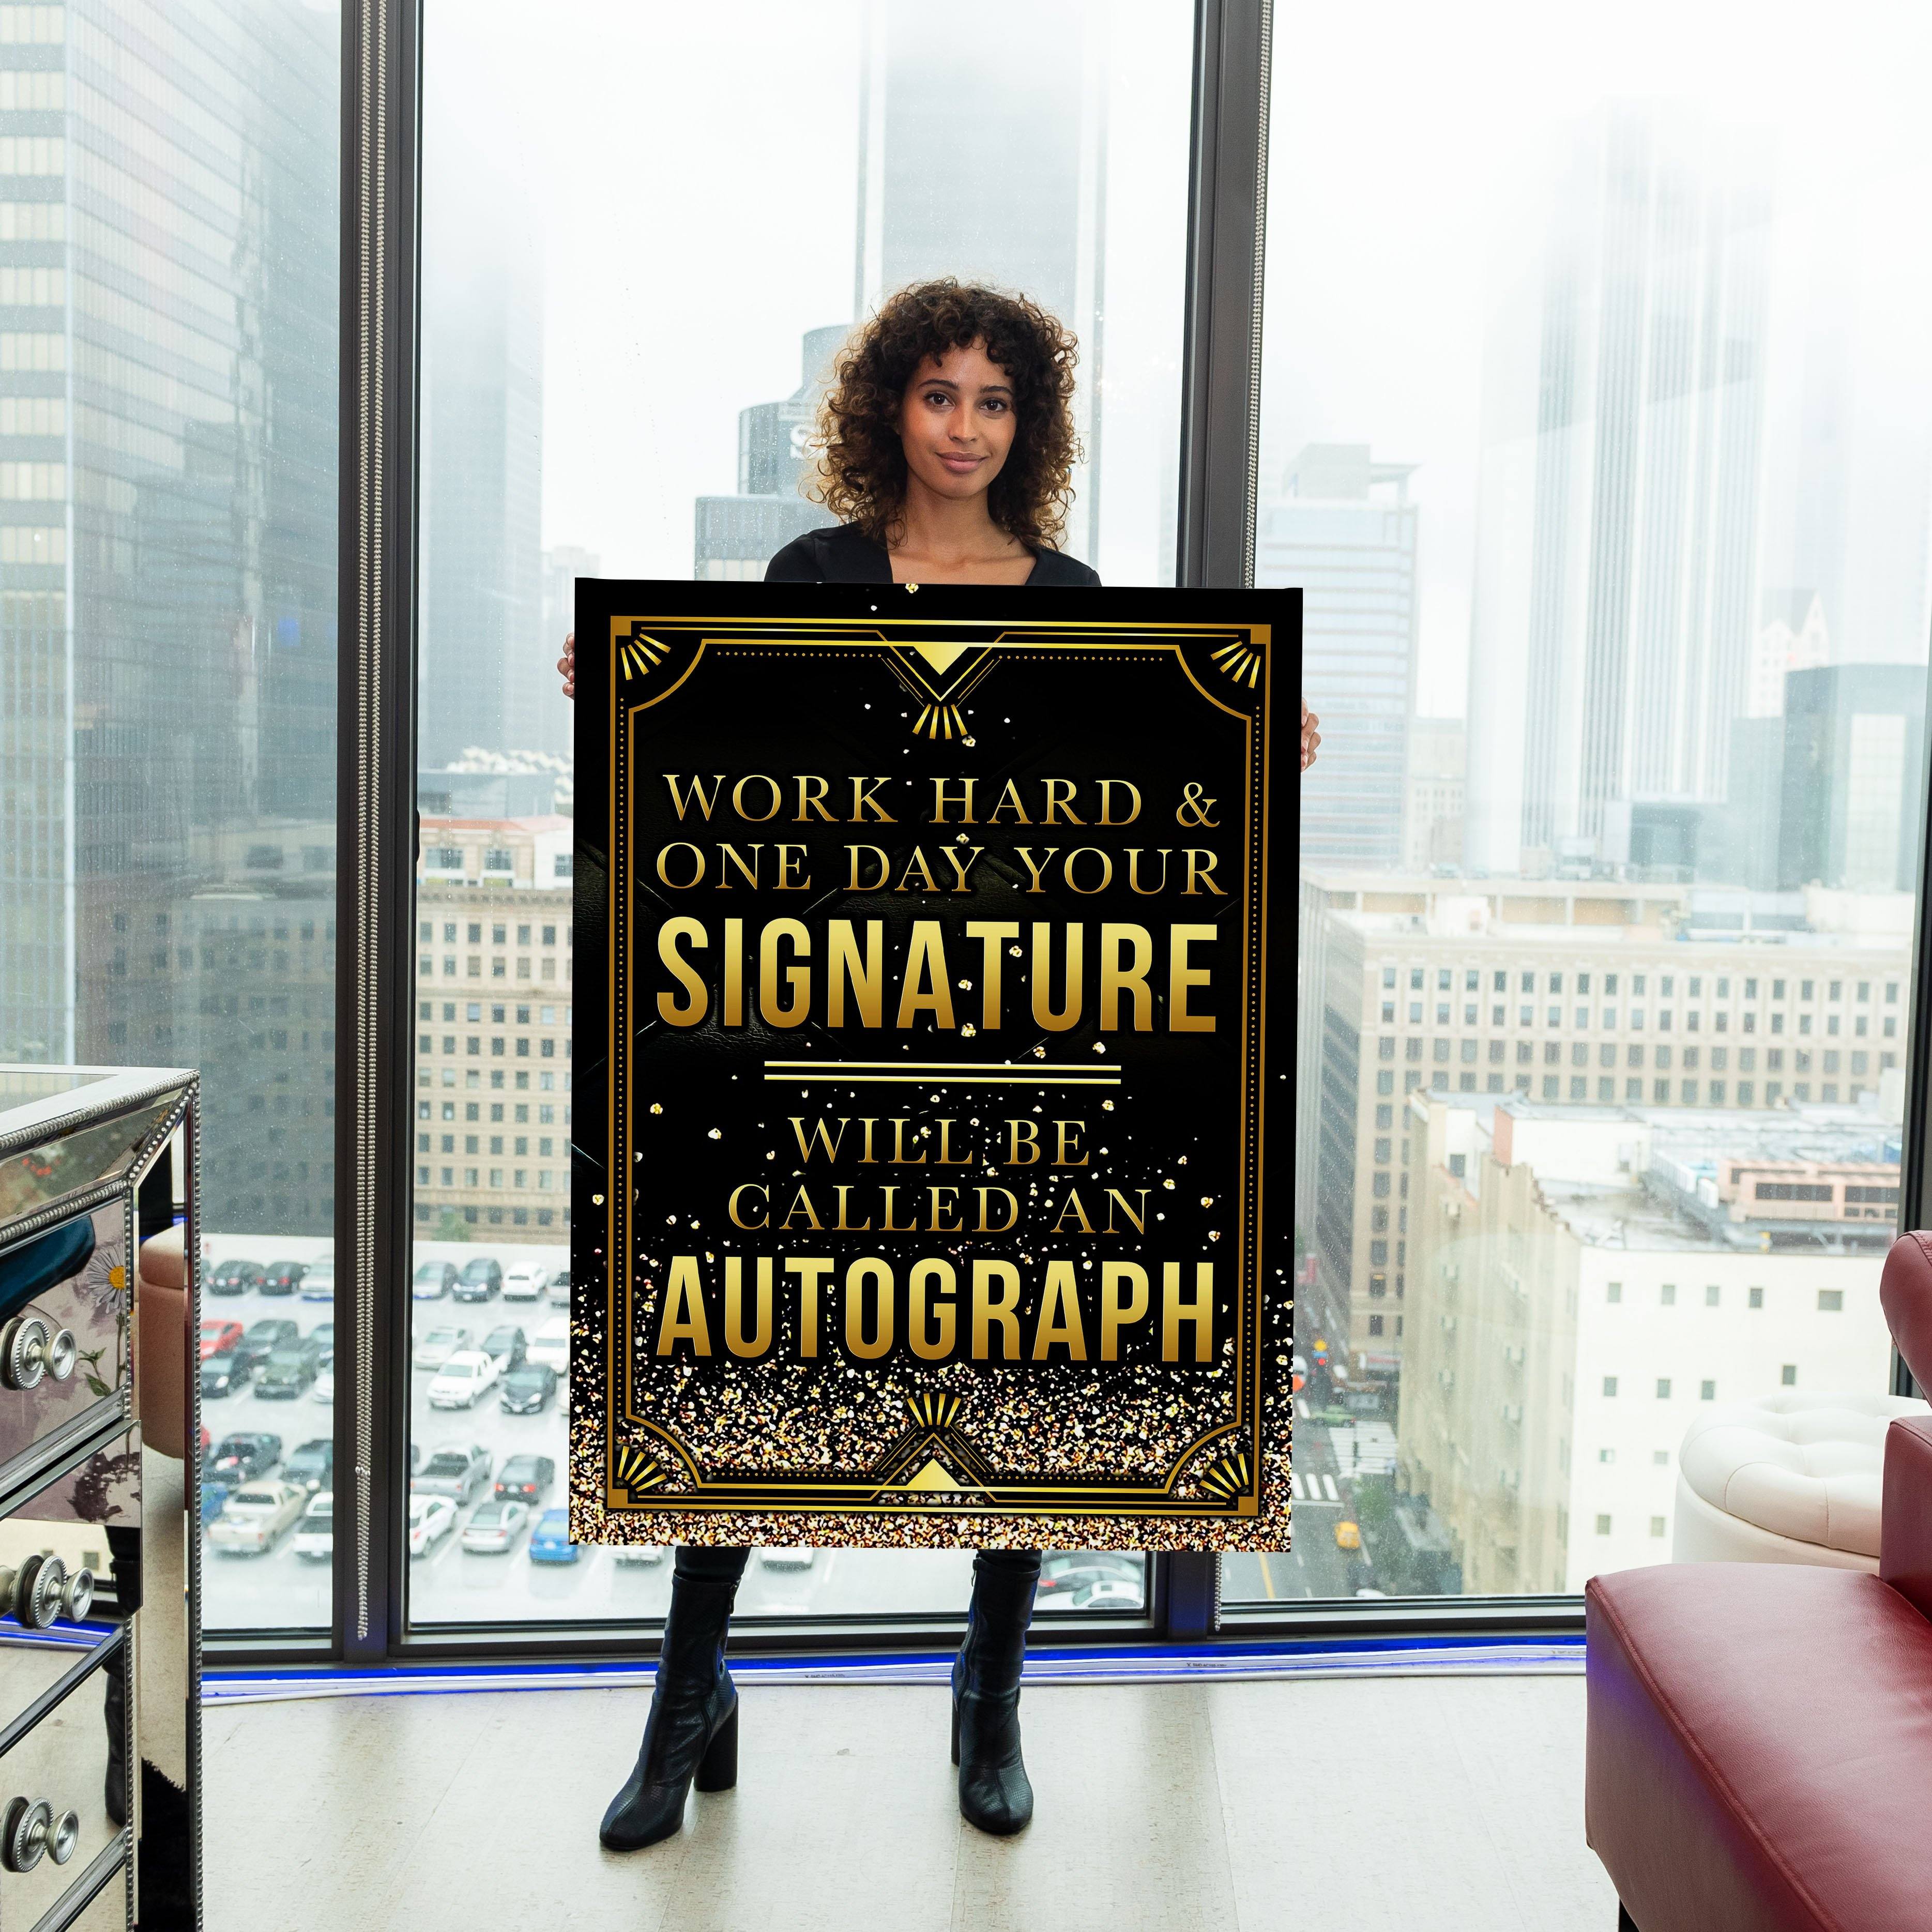 The Autograph